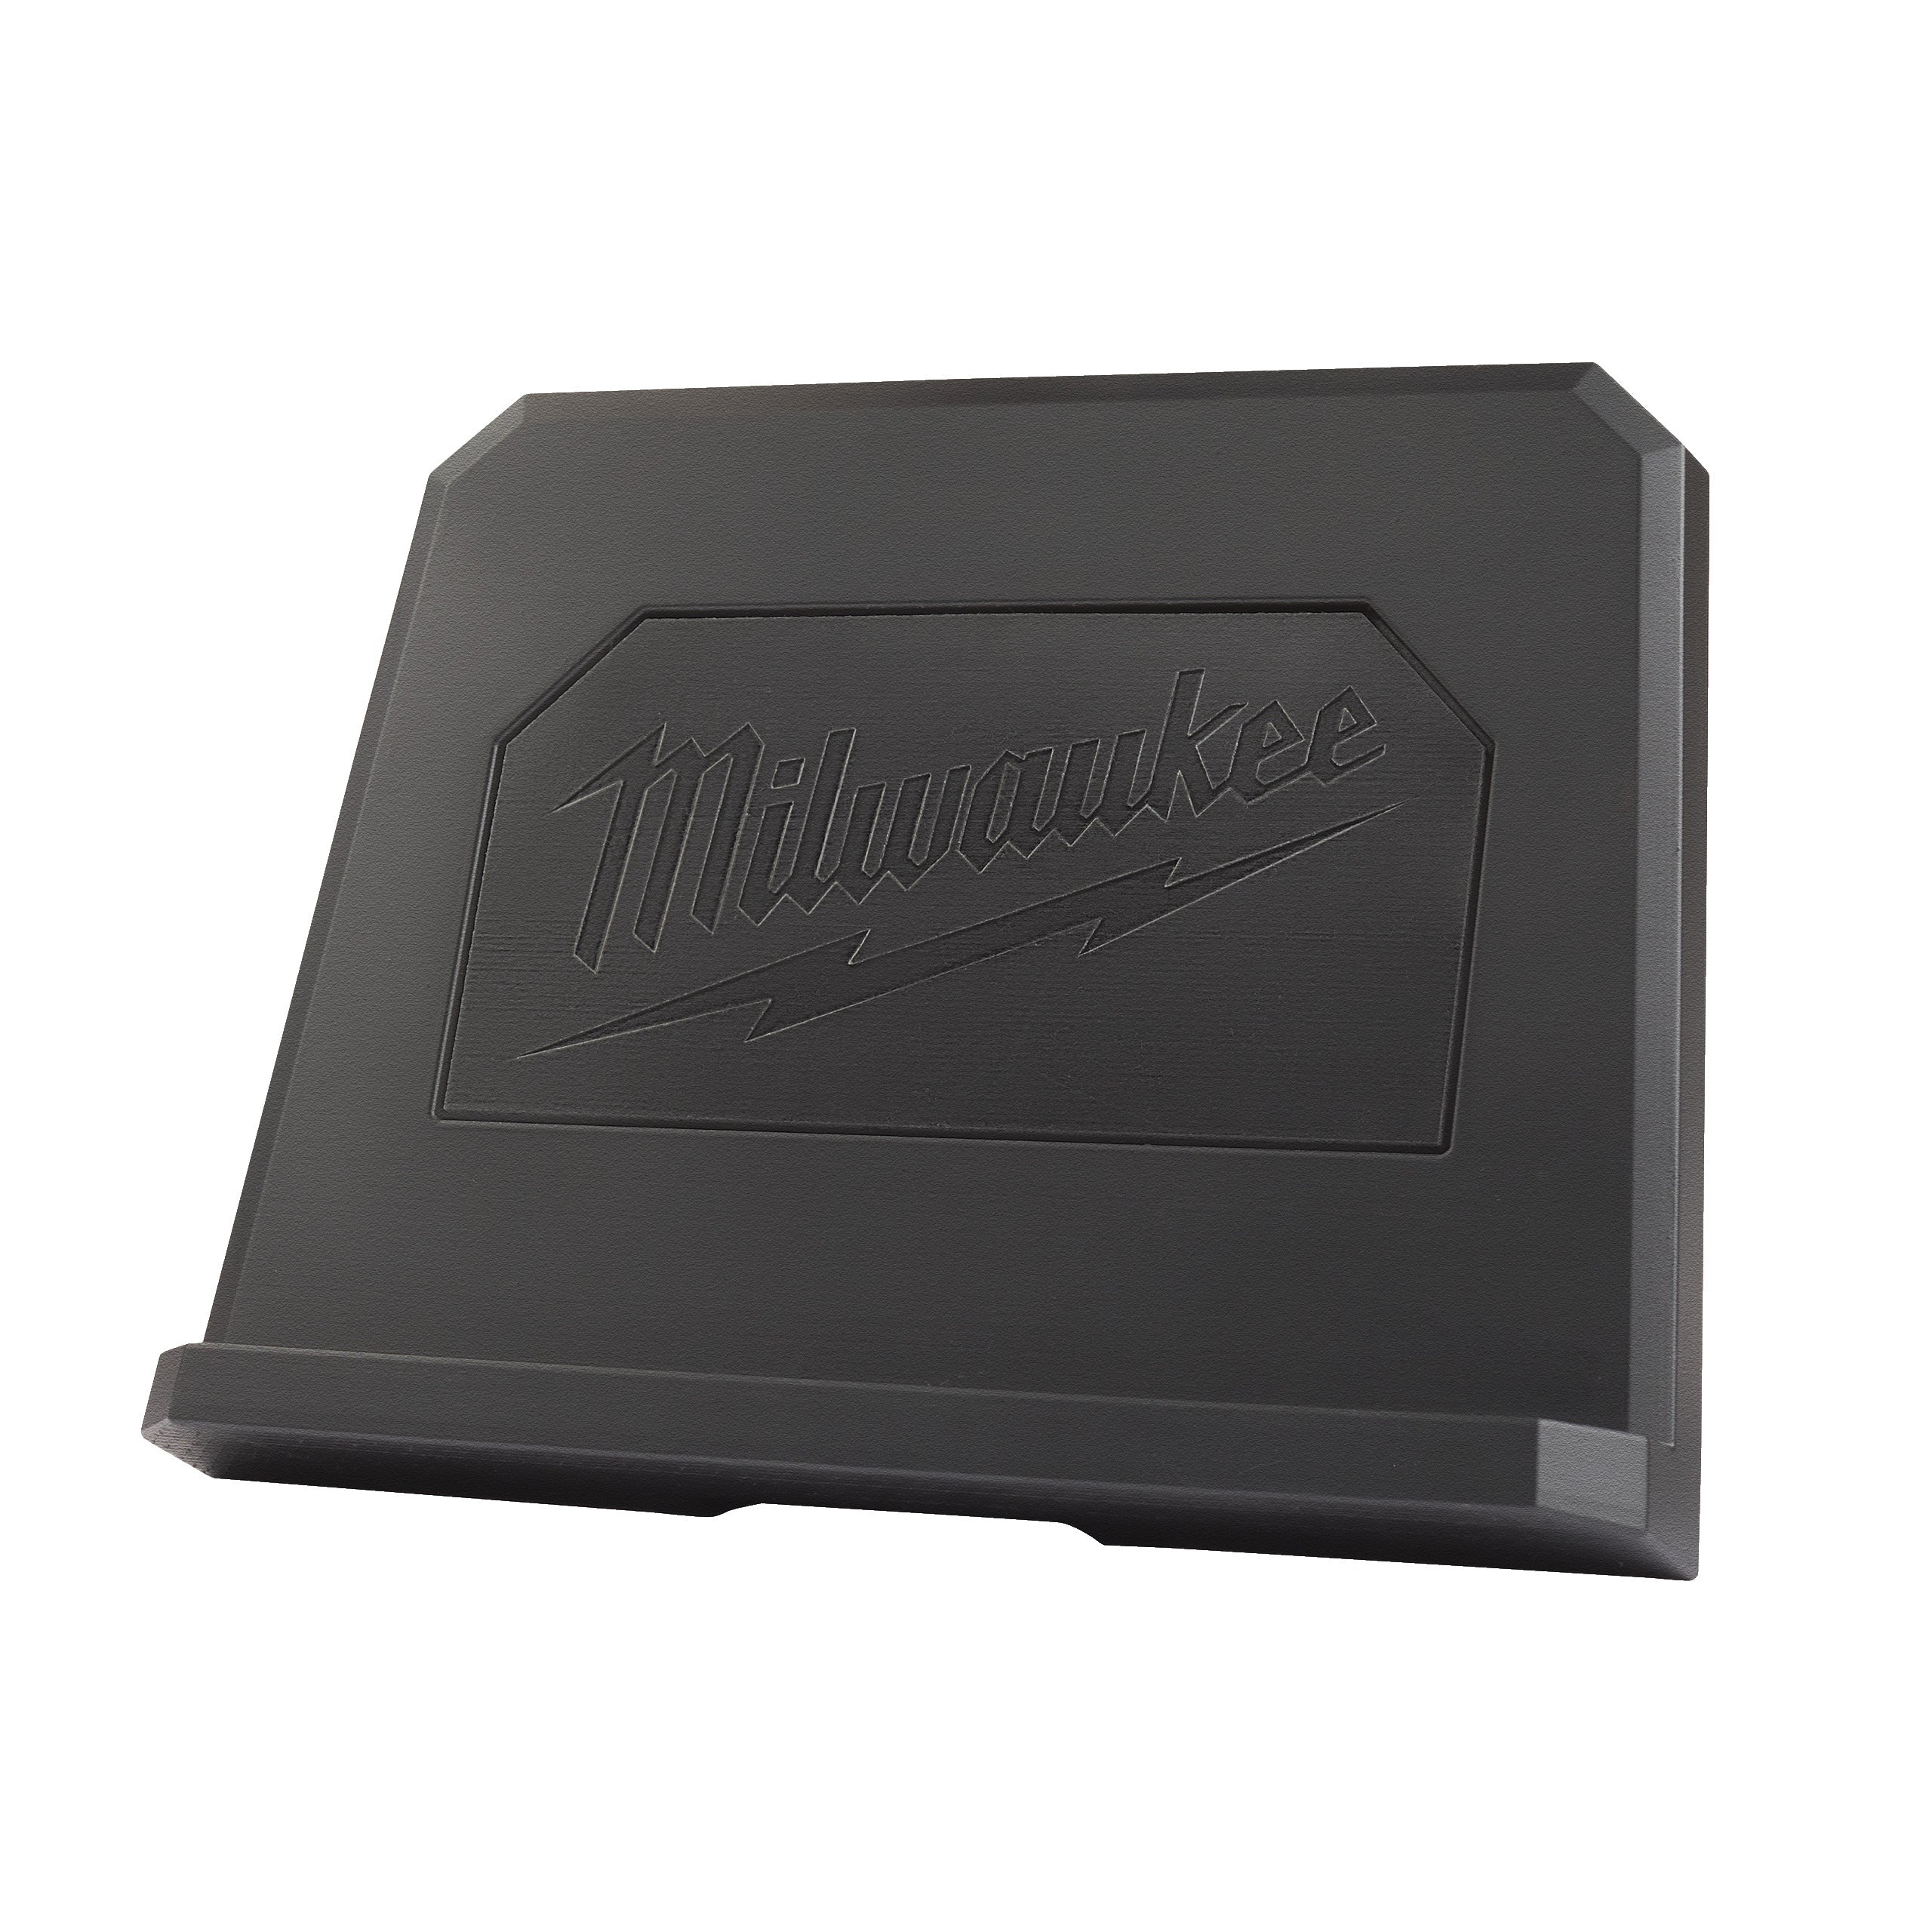 Suport tabletă pentru cameră inspecție Milwaukee, cod 4932478406